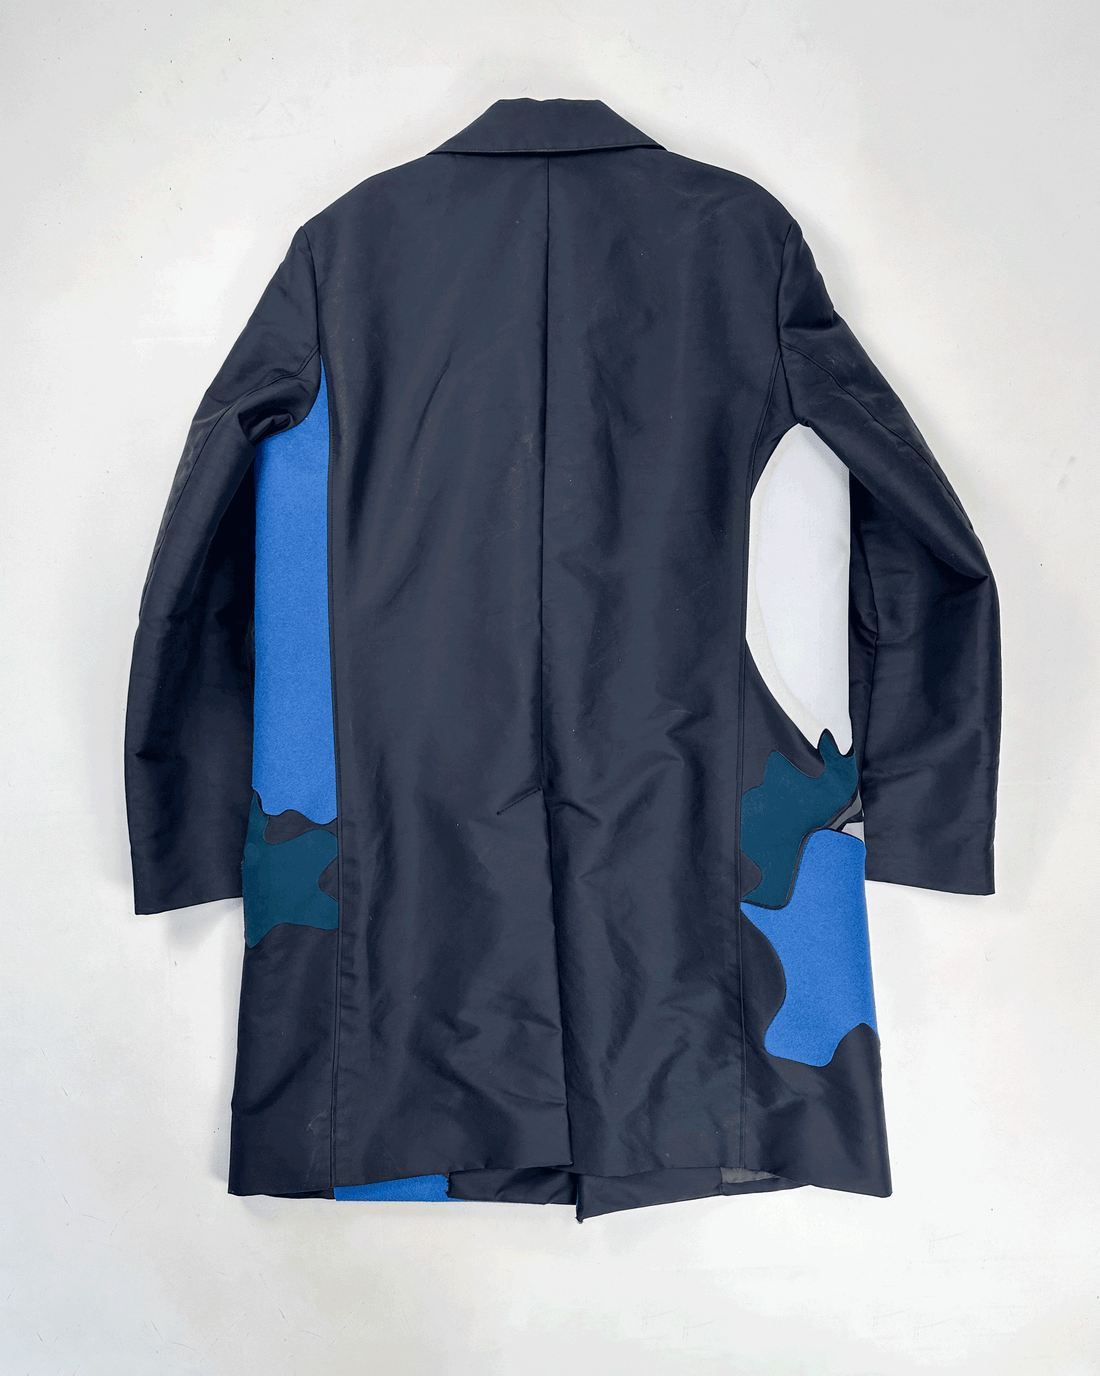 Kenzo Runway Landscape Coat Jacket F/W 2014